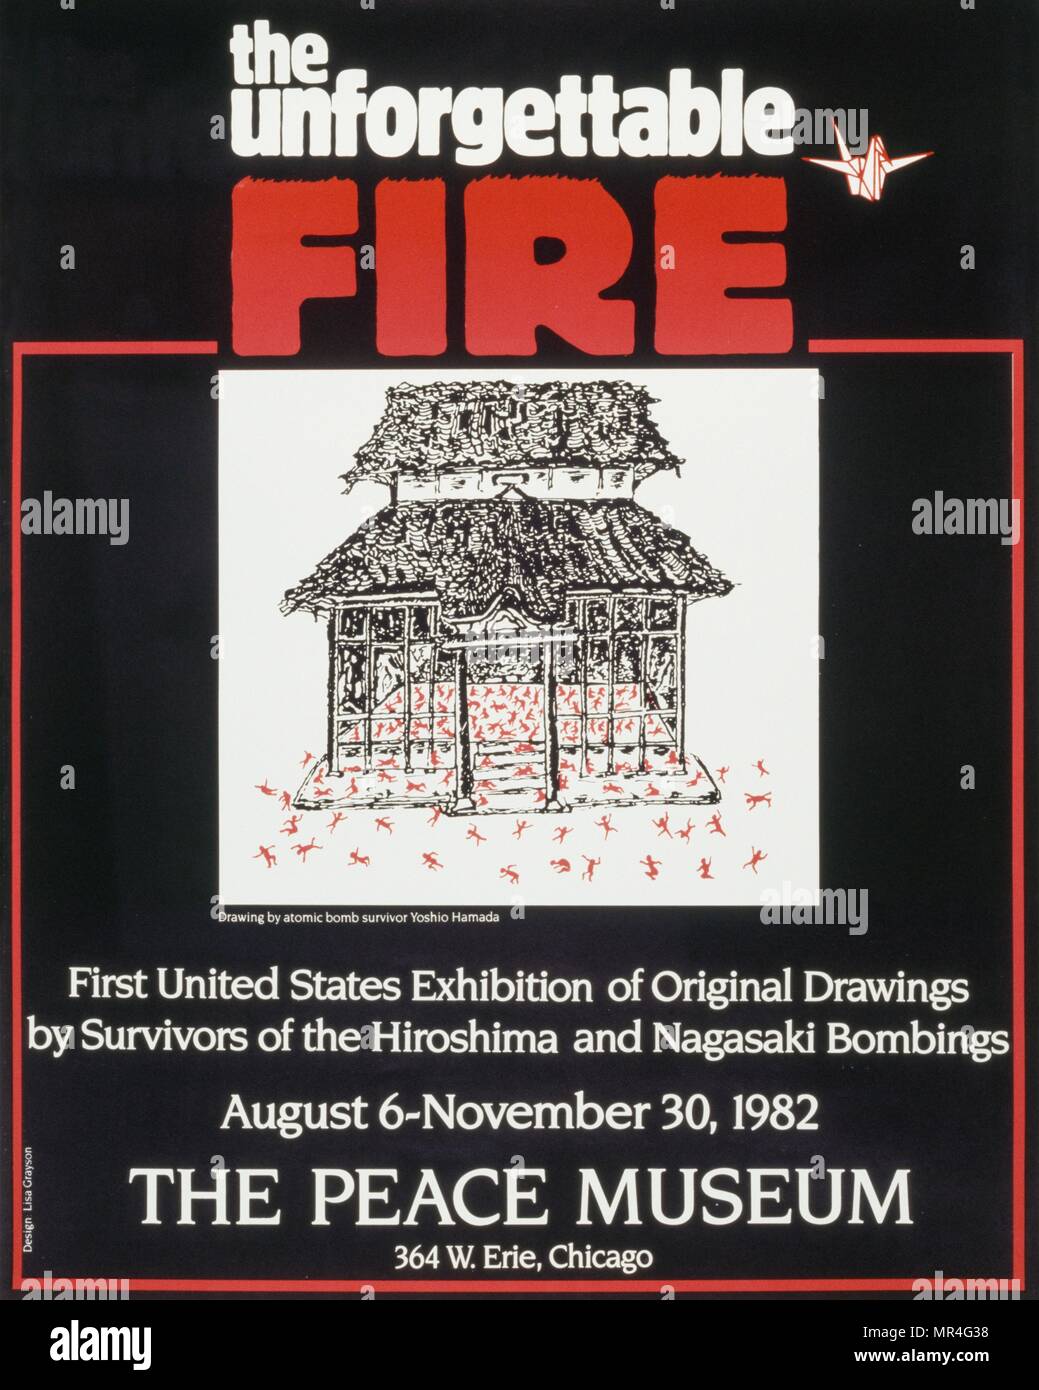 Affiche de l'exposition du Musée de la paix sur les survivants de la bombe nucléaire à Hiroshima. 1982, Chicago Banque D'Images